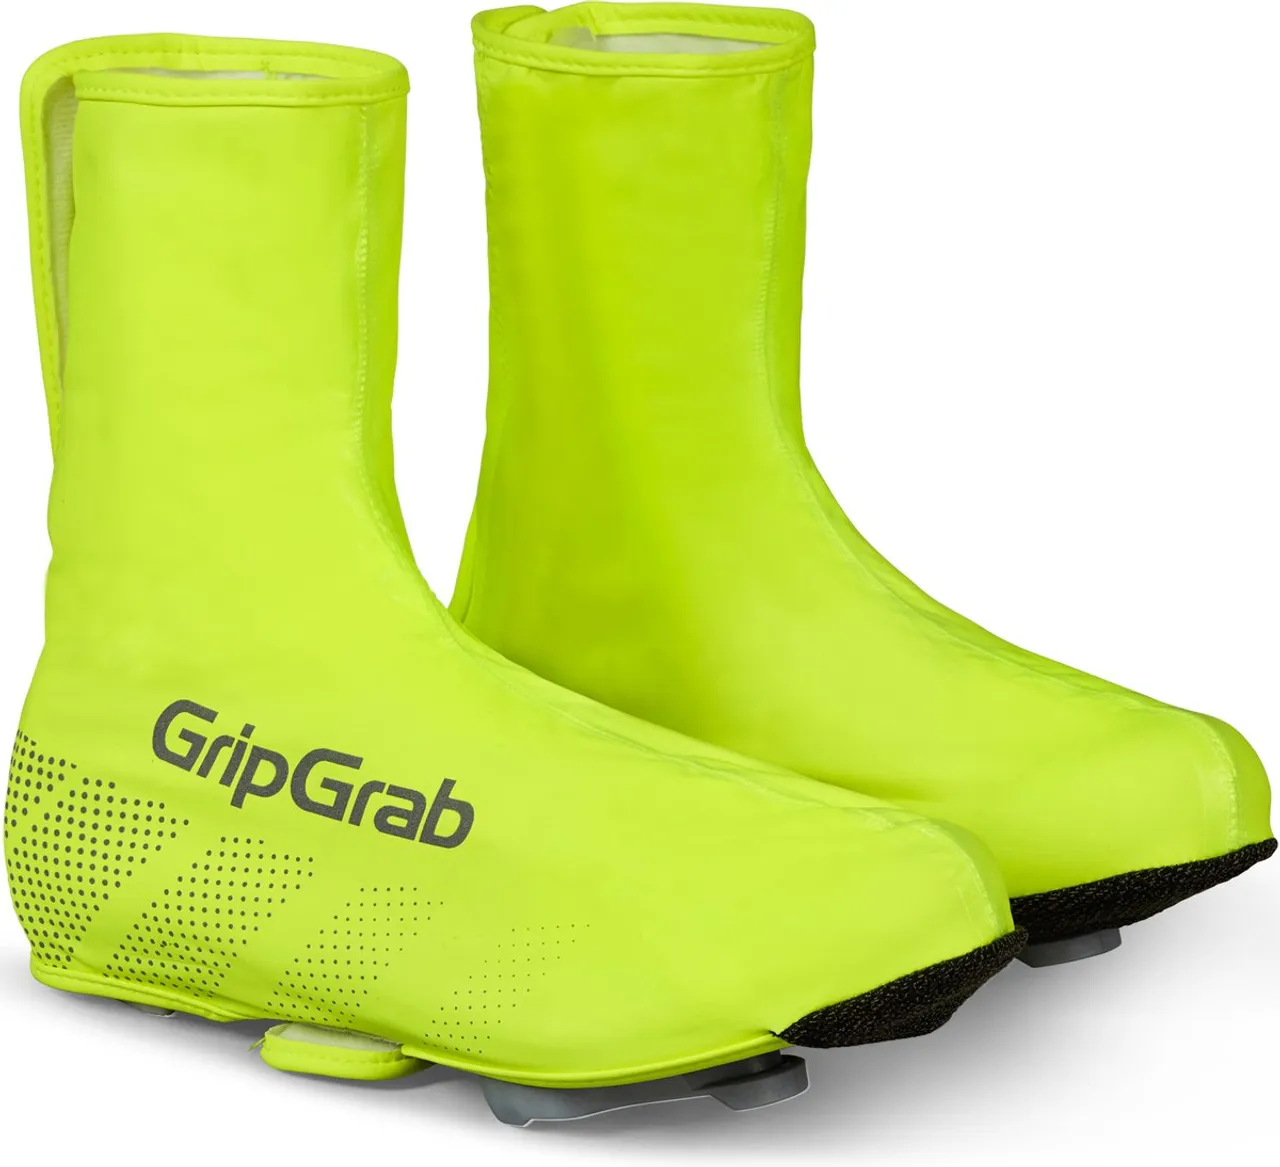 GripGrab - Ride Waterdichte Race Fiets Overschoenen Wielren Regen Fietsoverschoenen - Geel Hi-Vis - Unisex